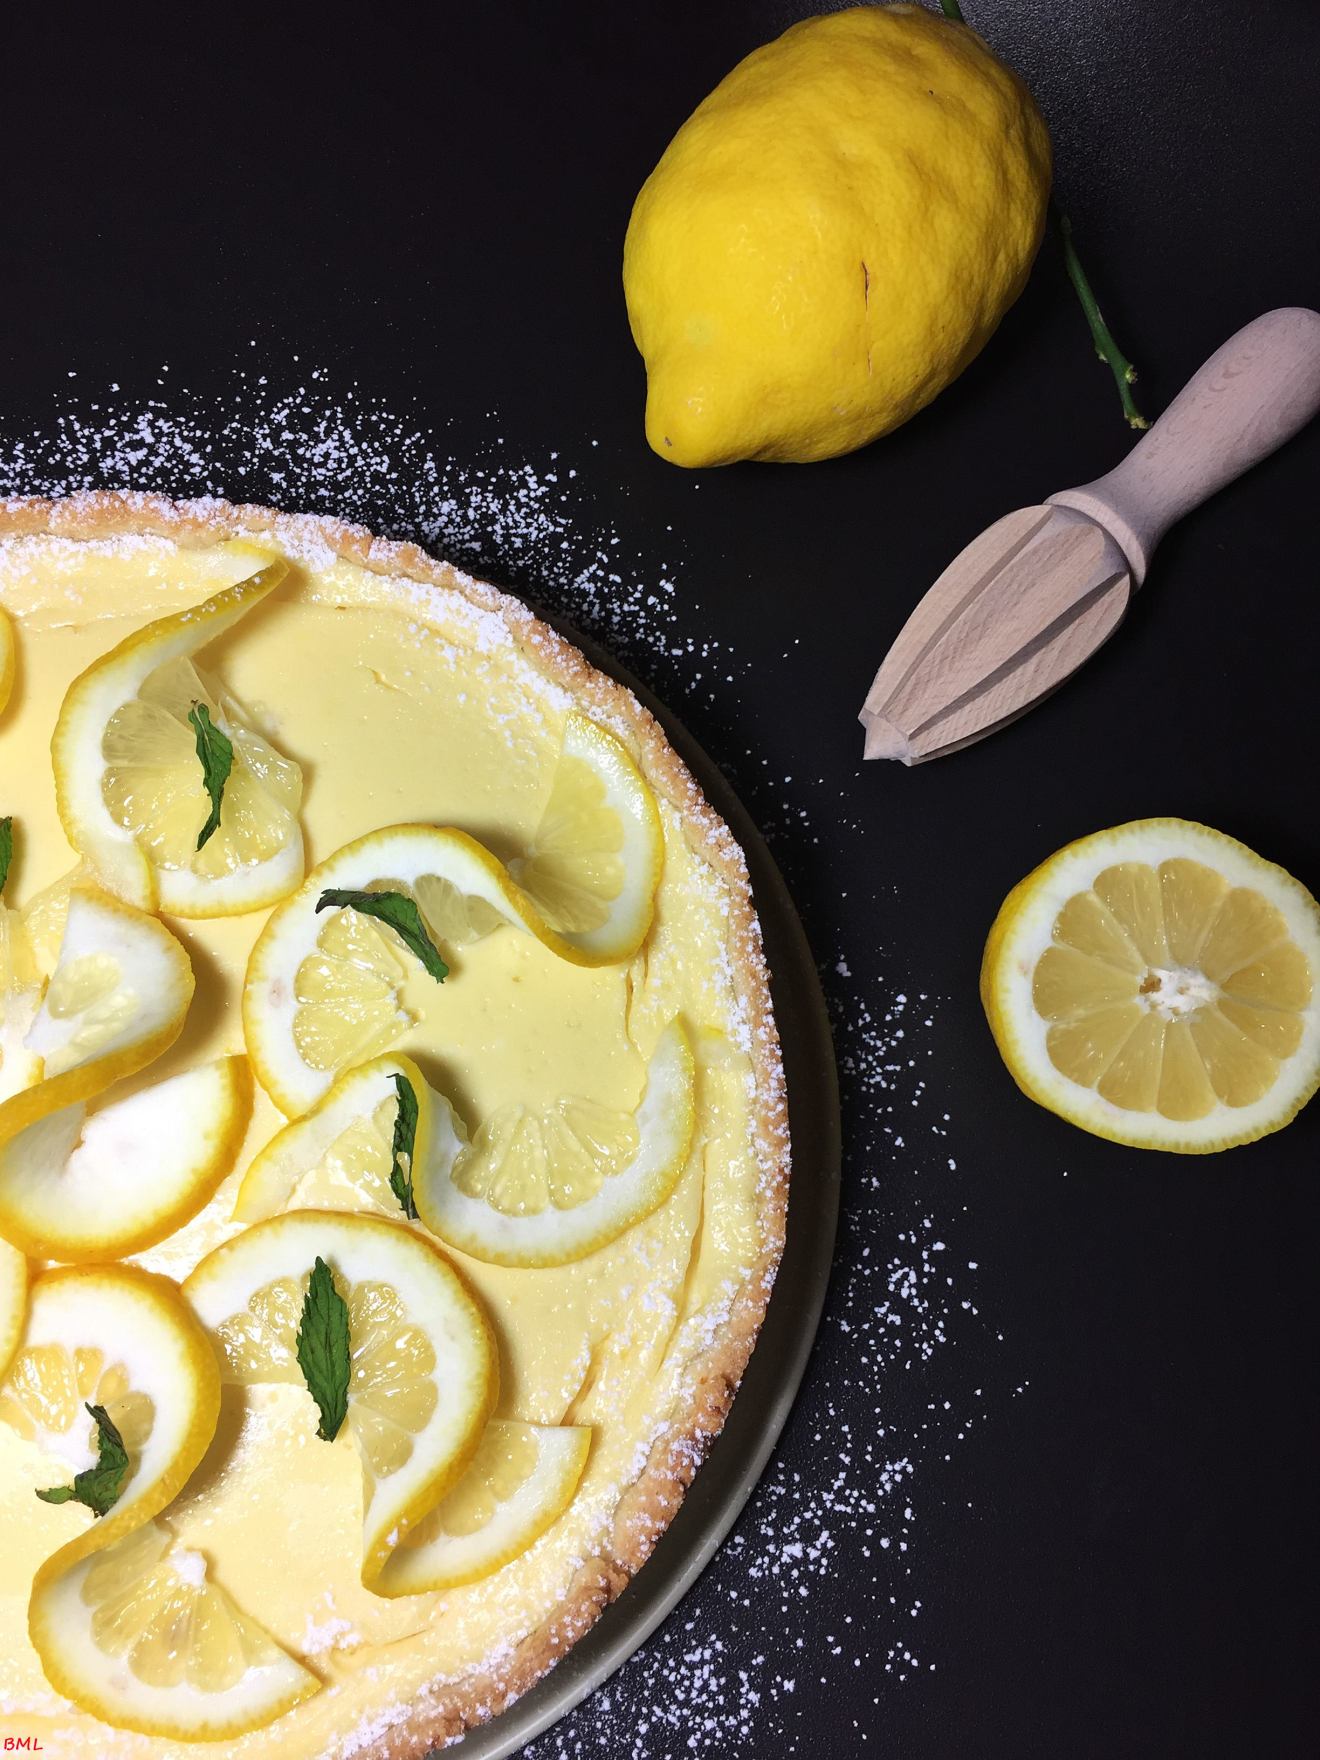 Zitronen-Käsekuchen…ganz schnell und einfach…so lecker zitronig frisch ...